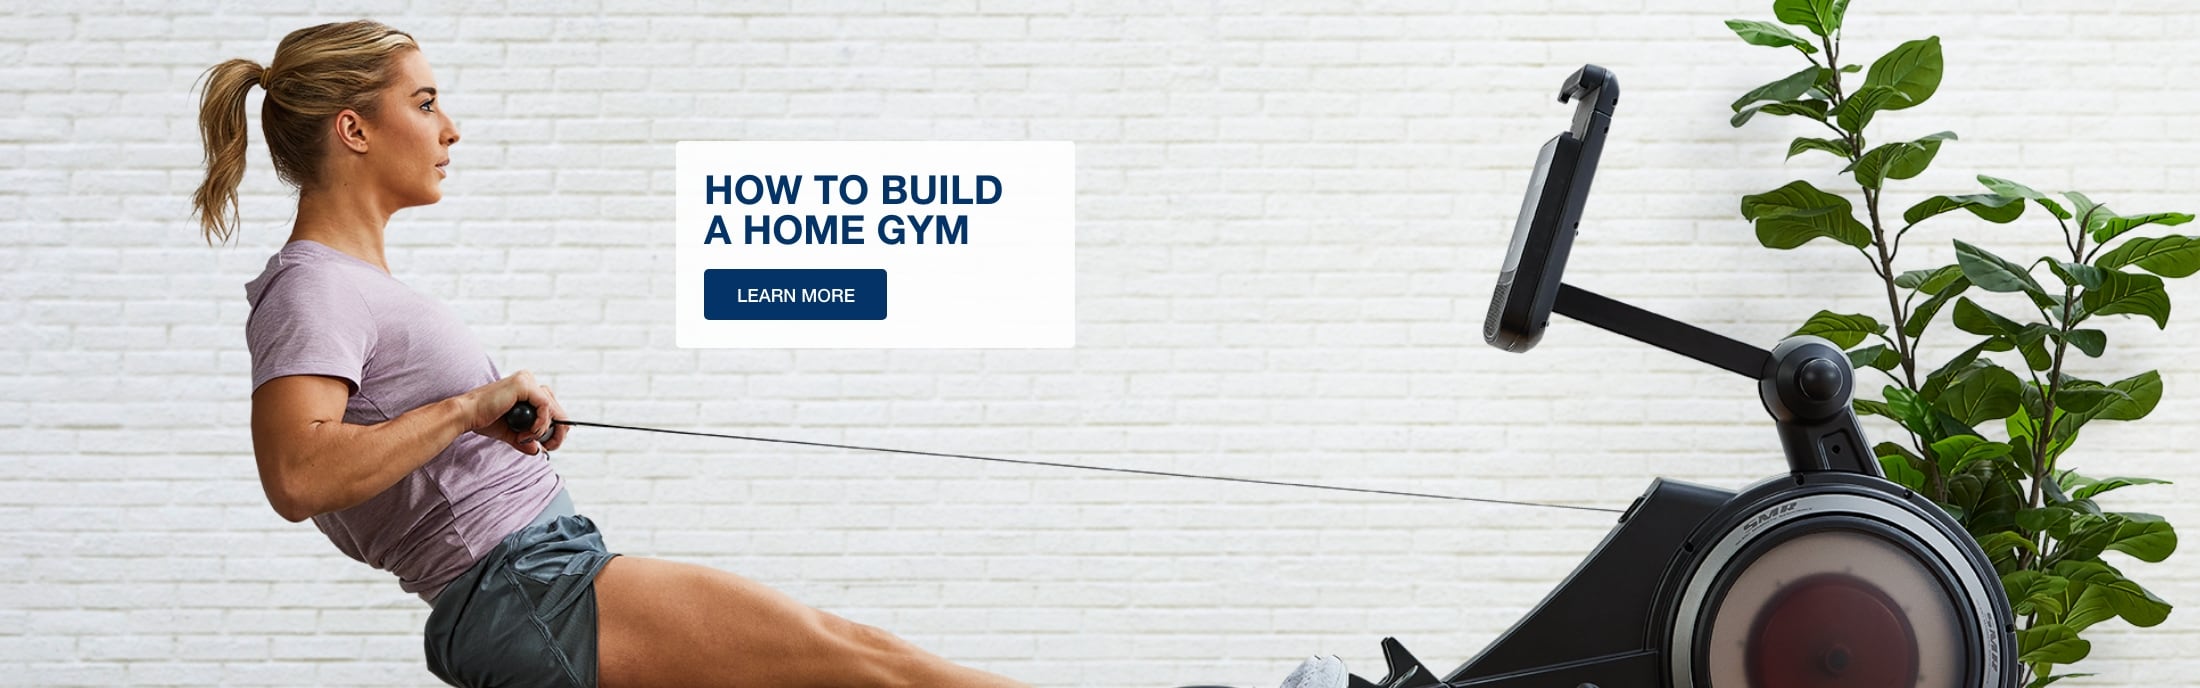 How to Build a Home Gym